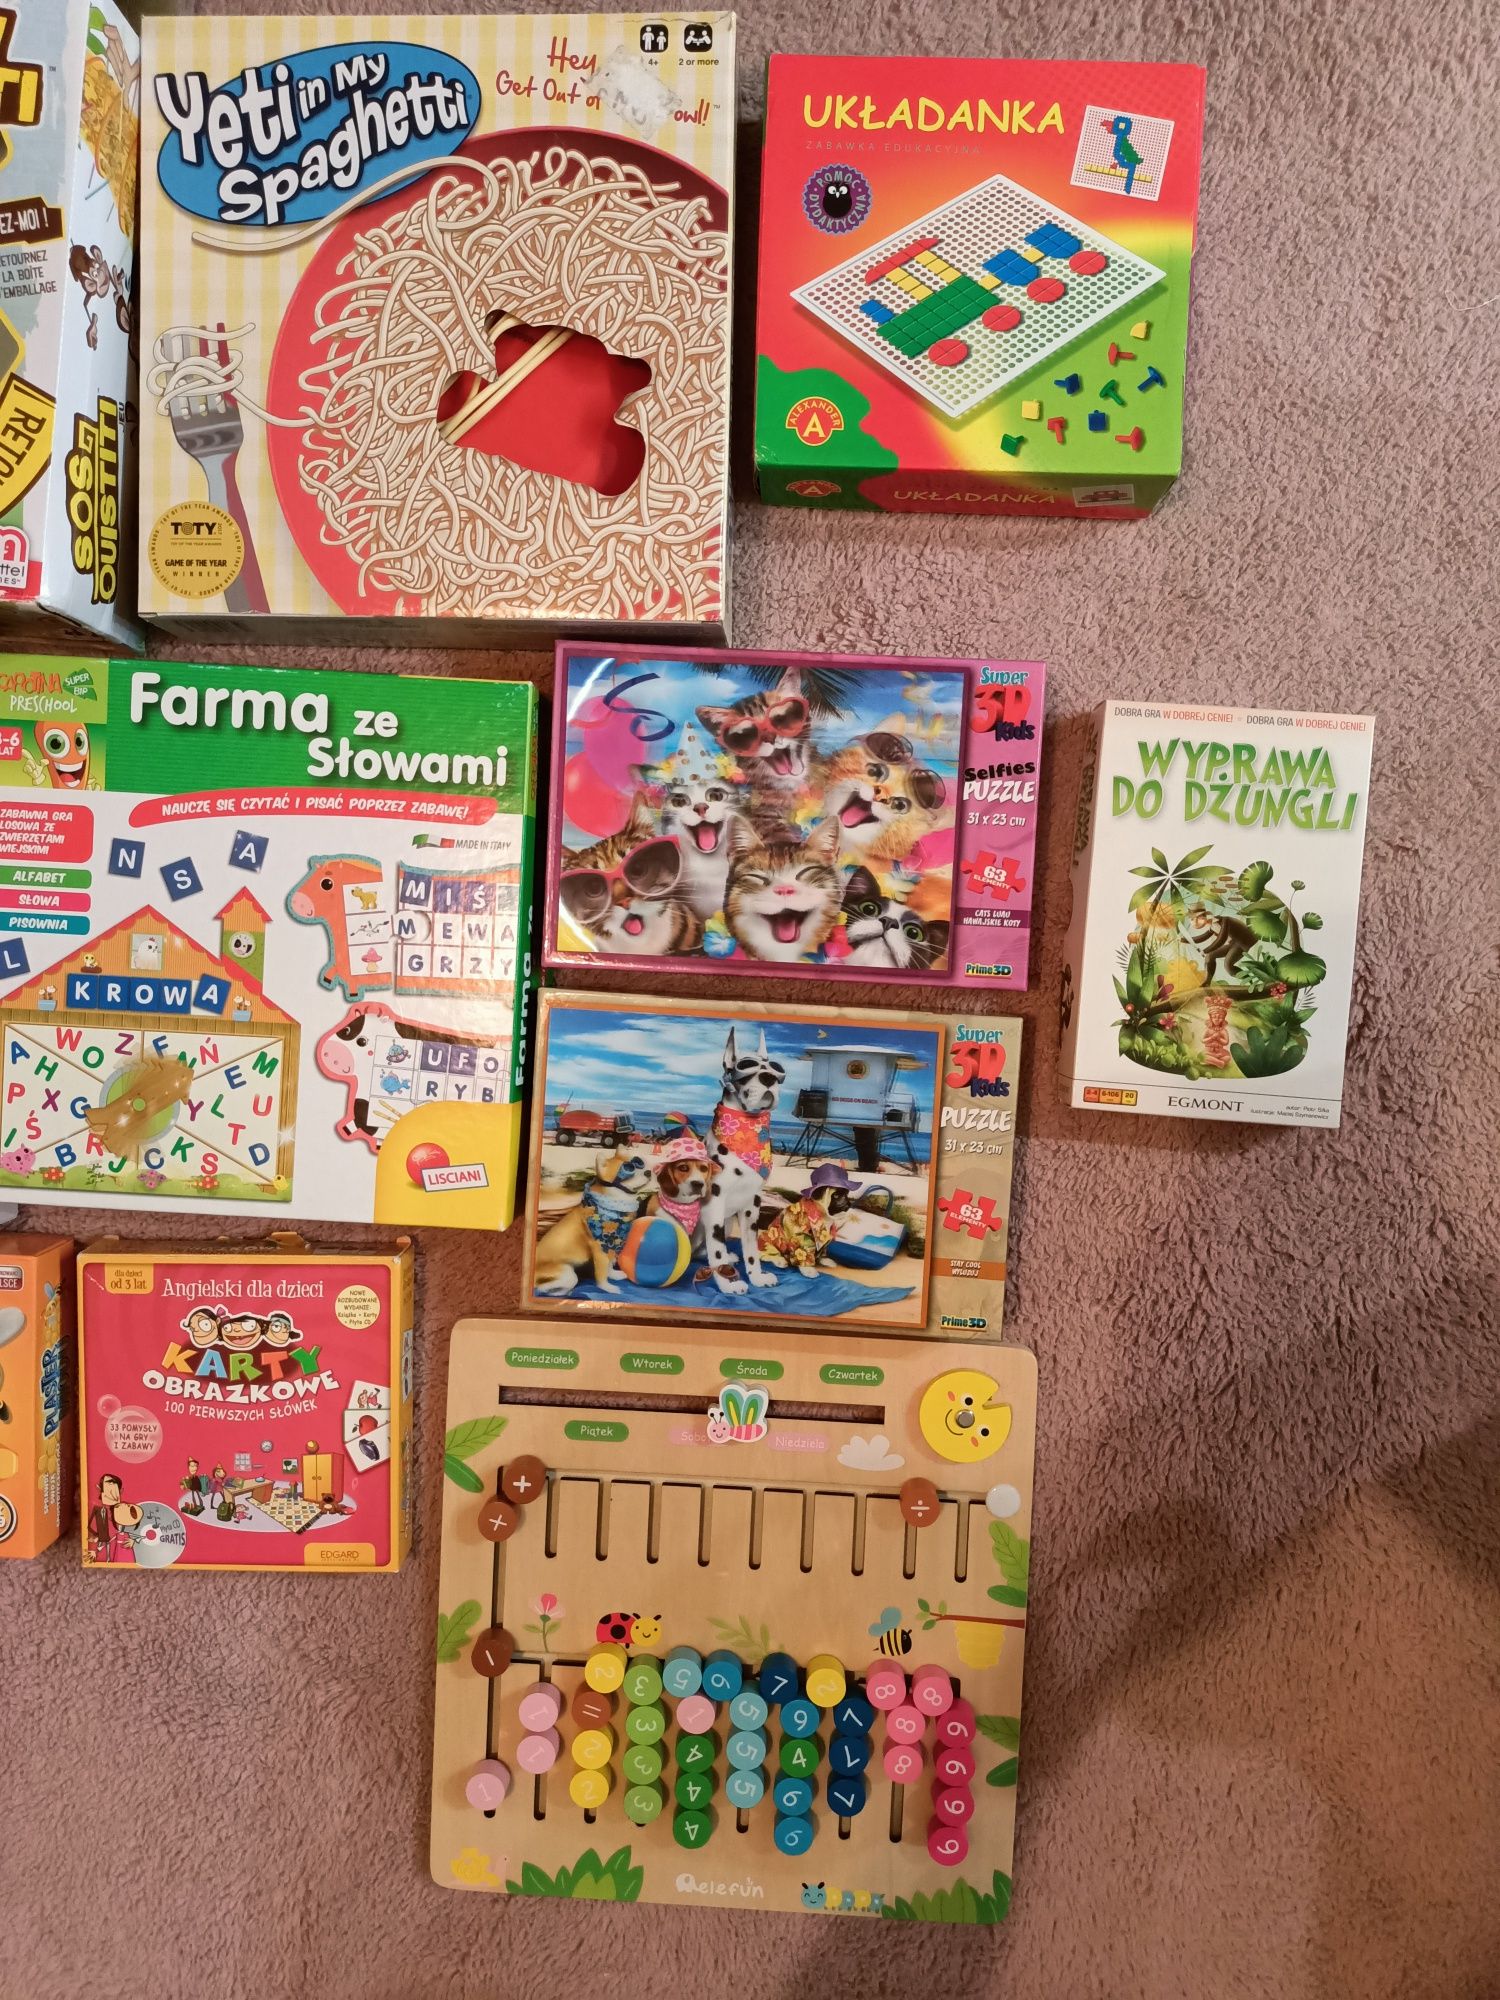 Okazja pilne Ogromny zestaw zabawek gier puzzli układanek dla dziecka